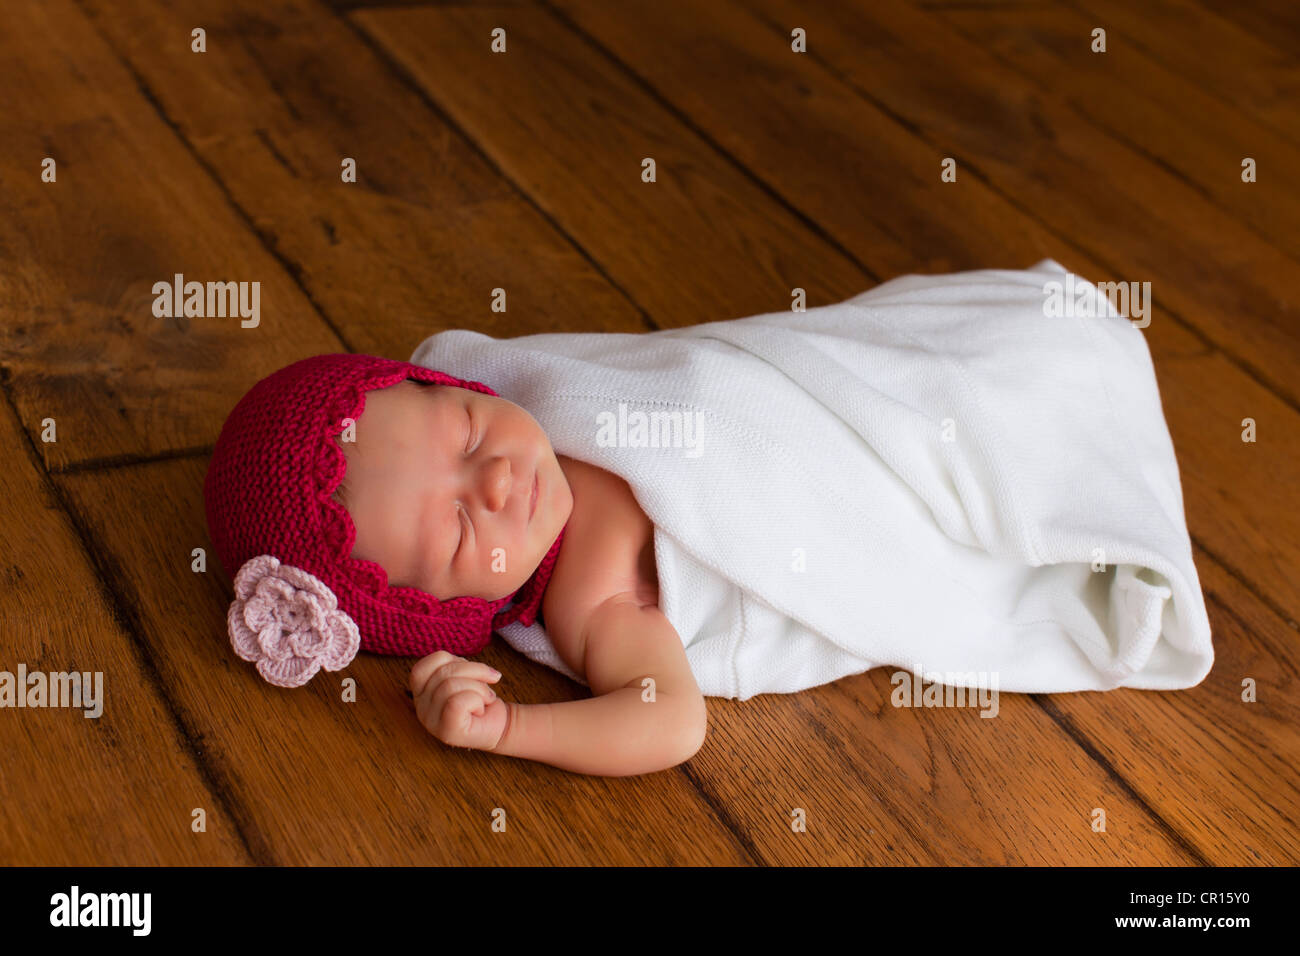 Bébé nouveau-né fille, deux semaines, avec petit chapeau rouge Photo Stock  - Alamy